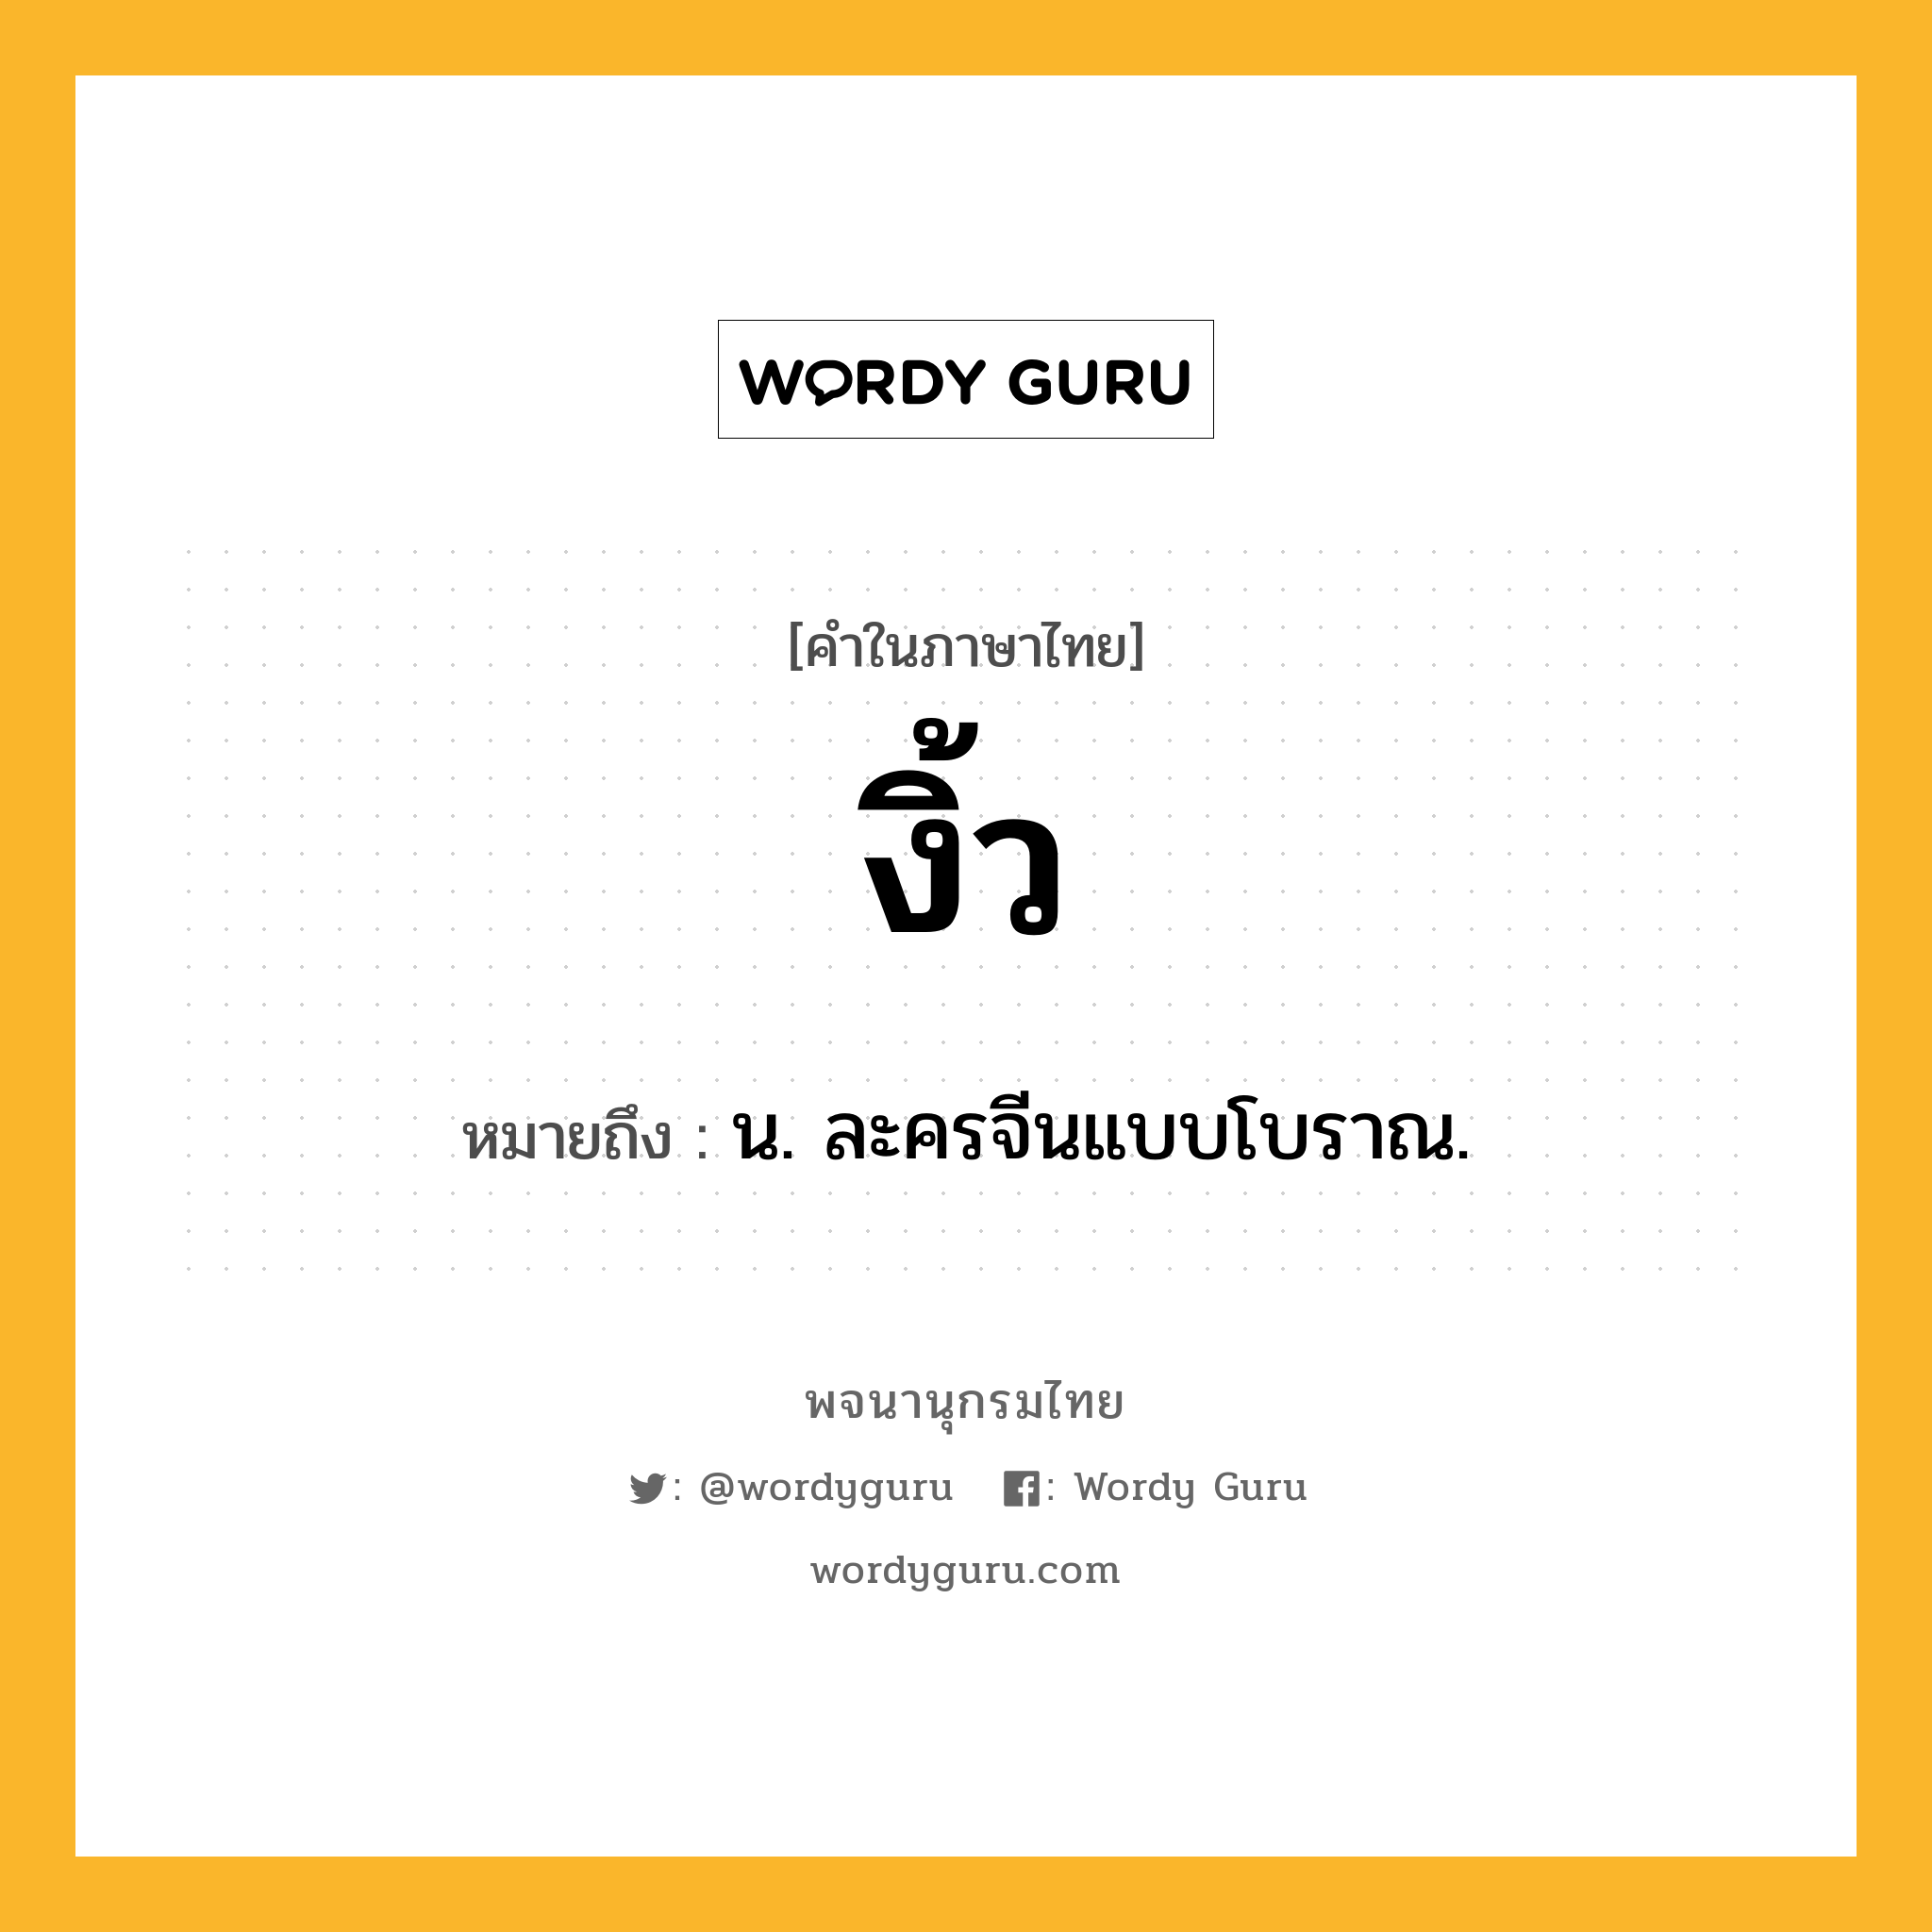 งิ้ว ความหมาย หมายถึงอะไร?, คำในภาษาไทย งิ้ว หมายถึง น. ละครจีนแบบโบราณ.